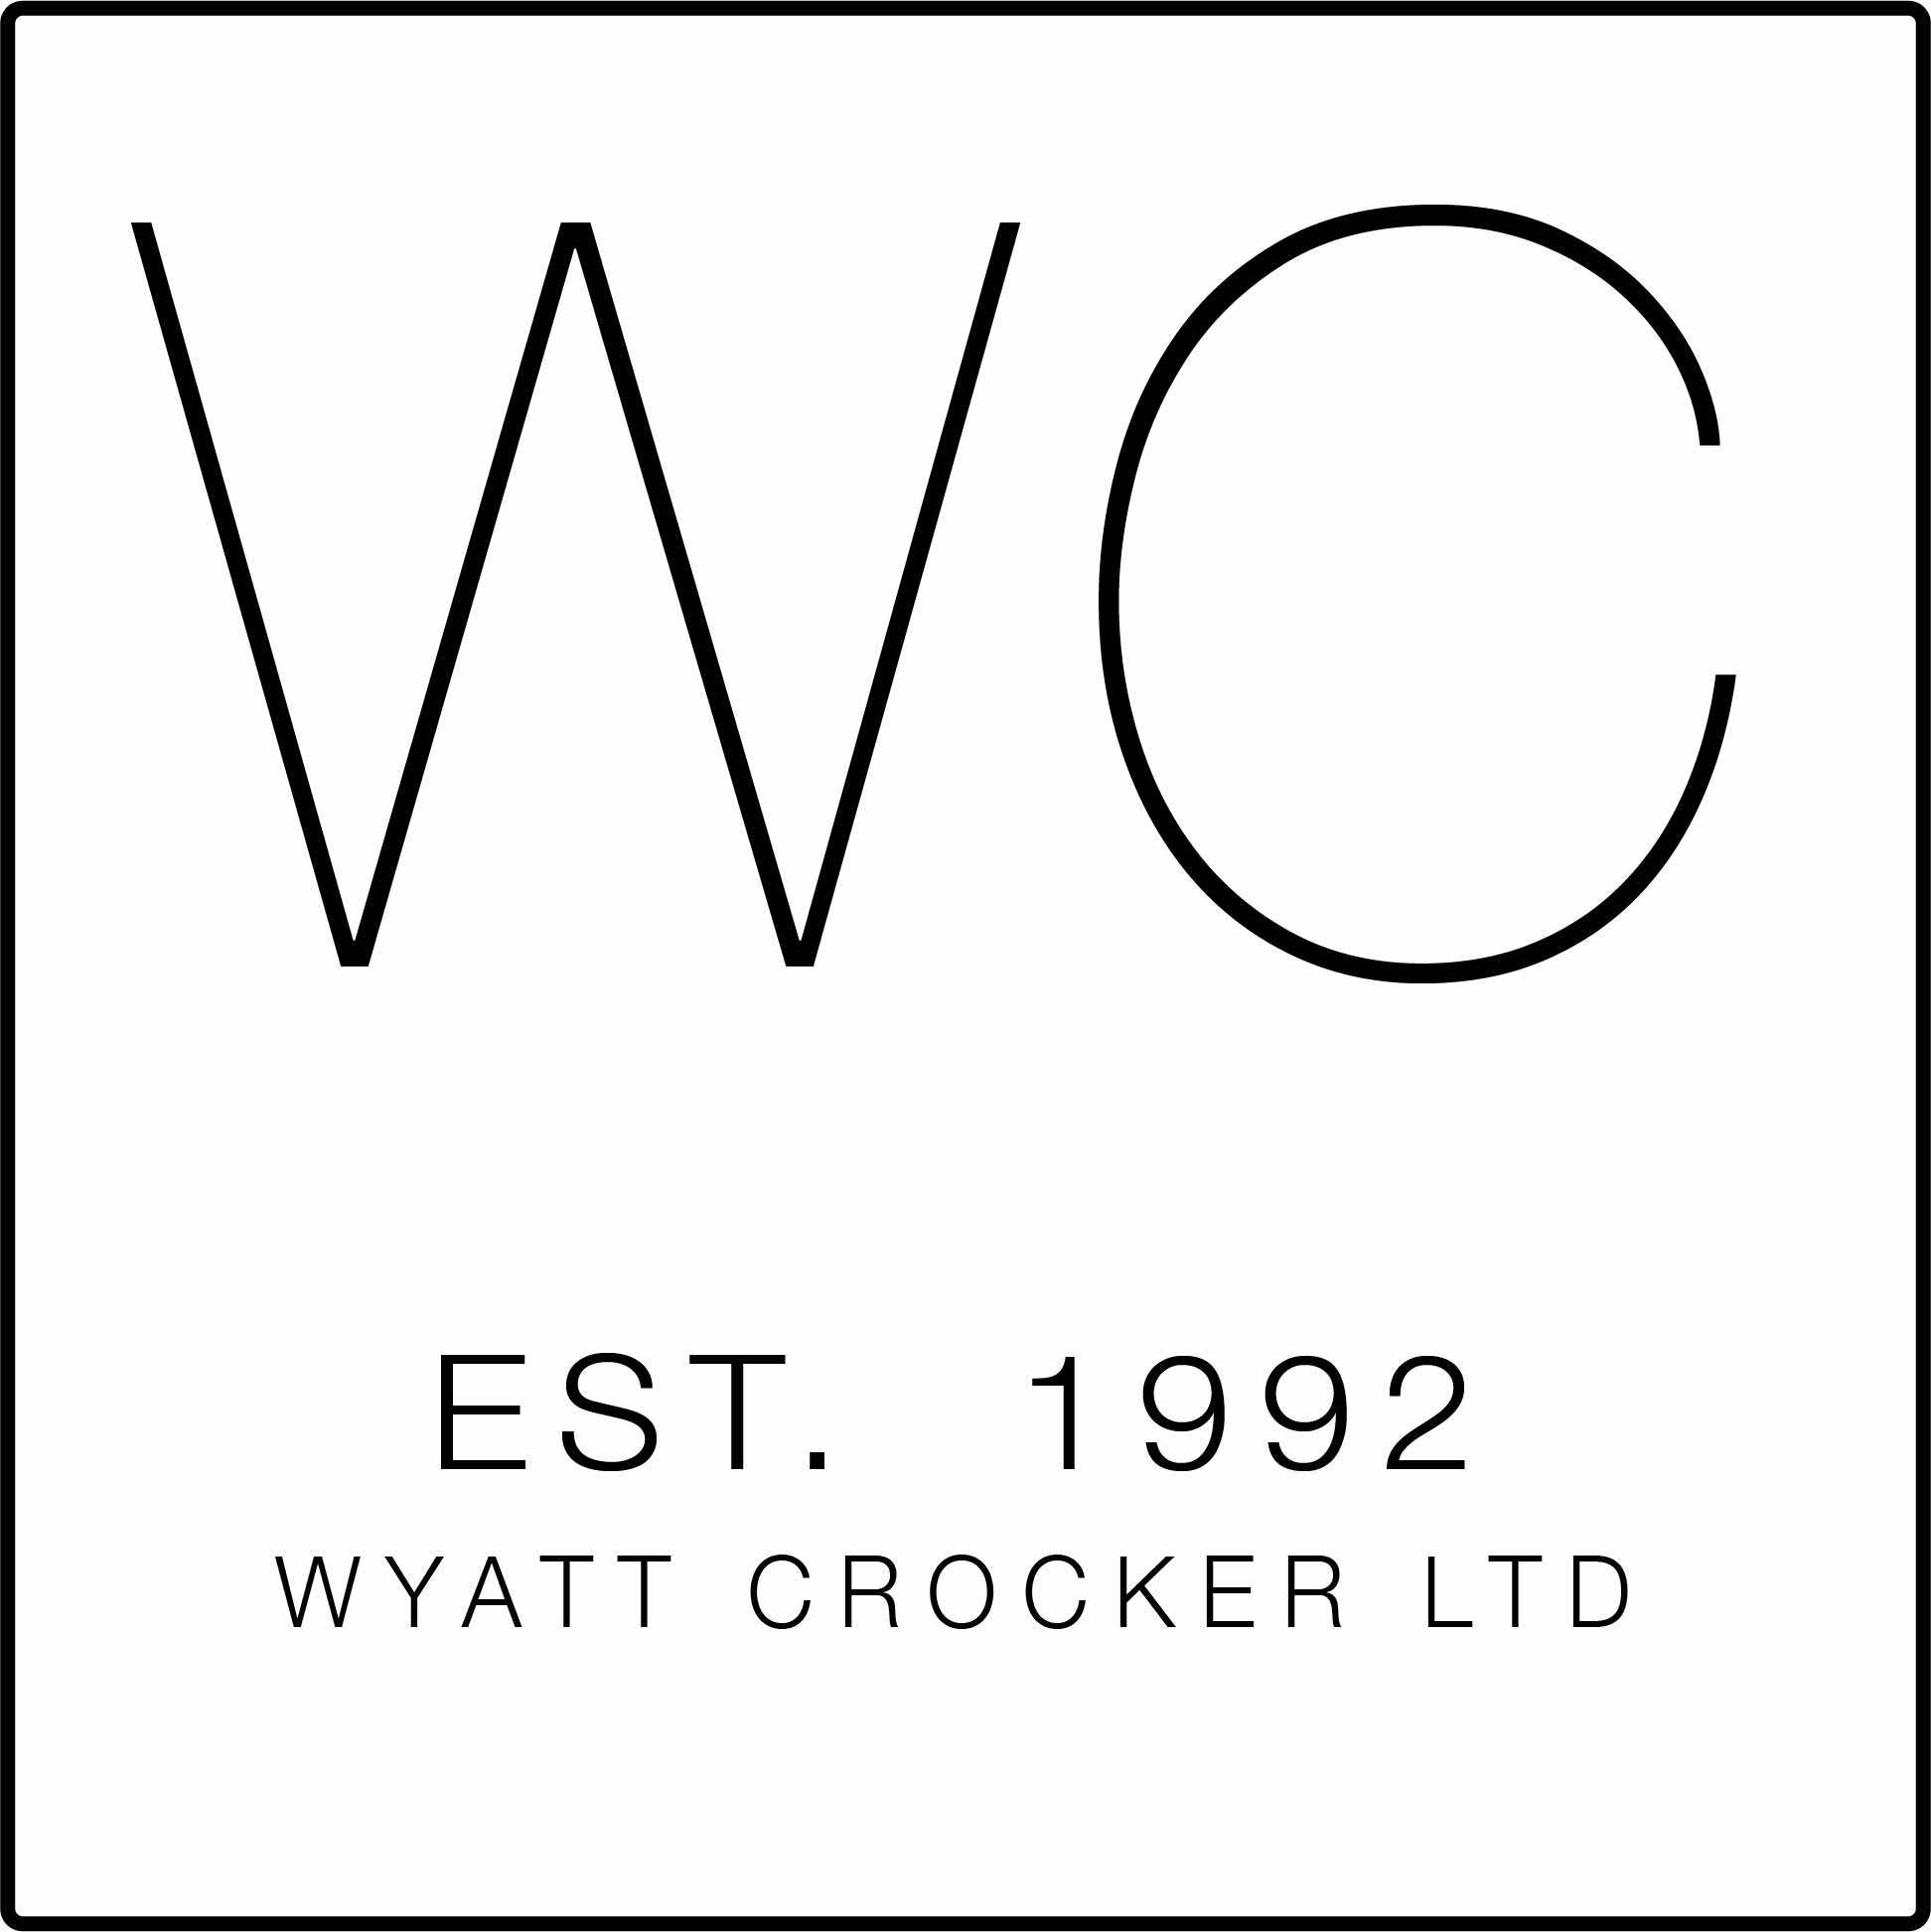 Wyatt Crocker Ltd